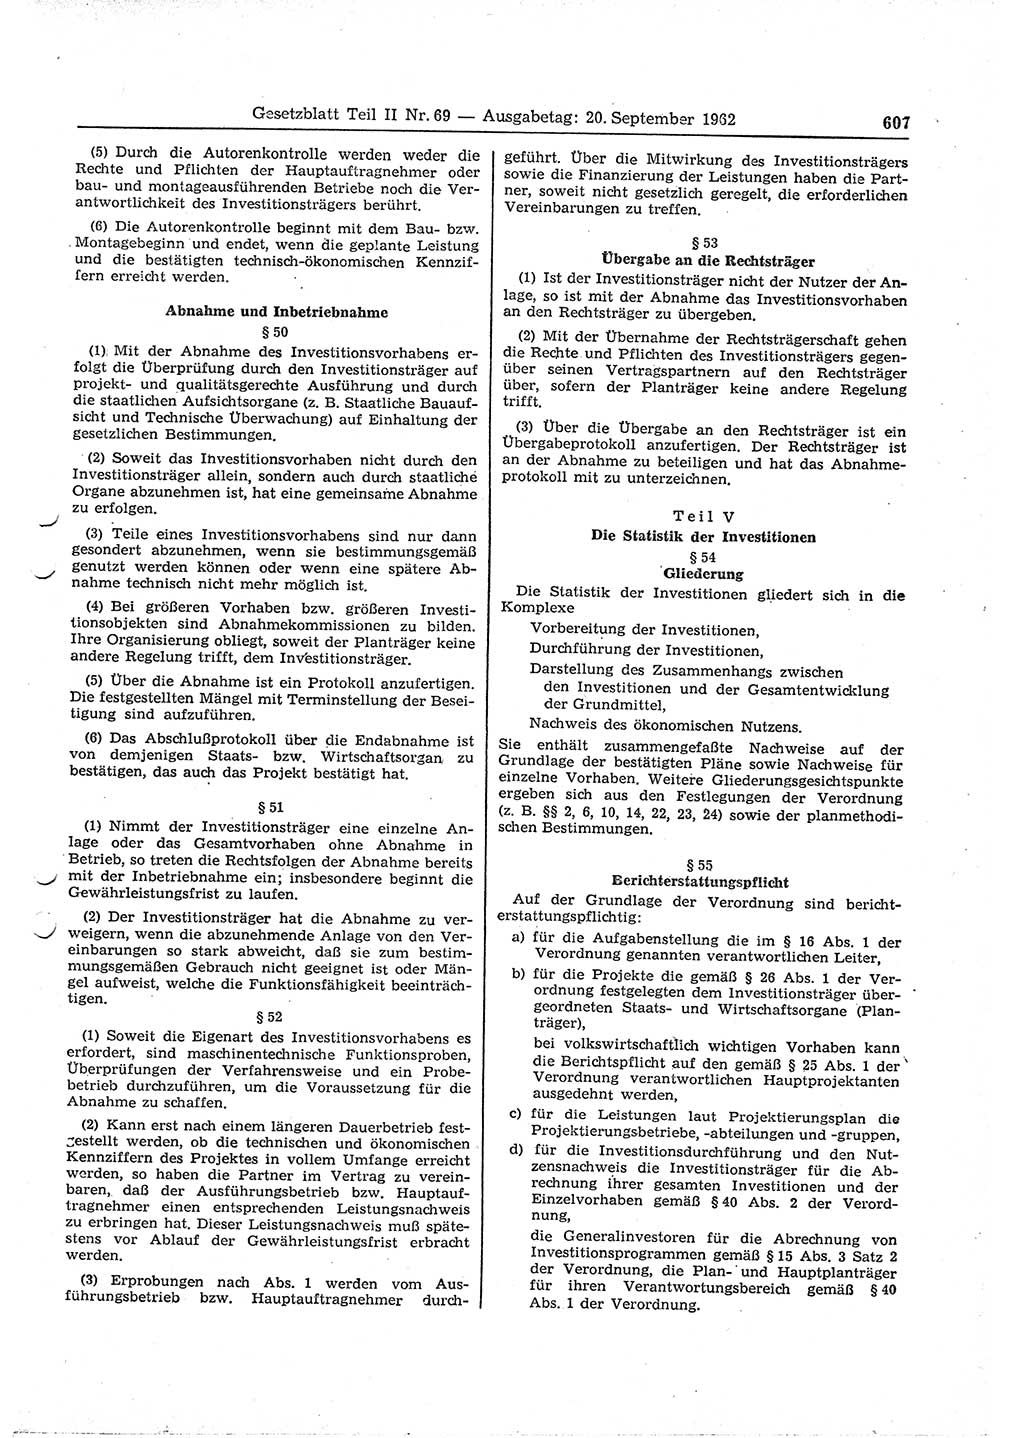 Gesetzblatt (GBl.) der Deutschen Demokratischen Republik (DDR) Teil ⅠⅠ 1962, Seite 607 (GBl. DDR ⅠⅠ 1962, S. 607)